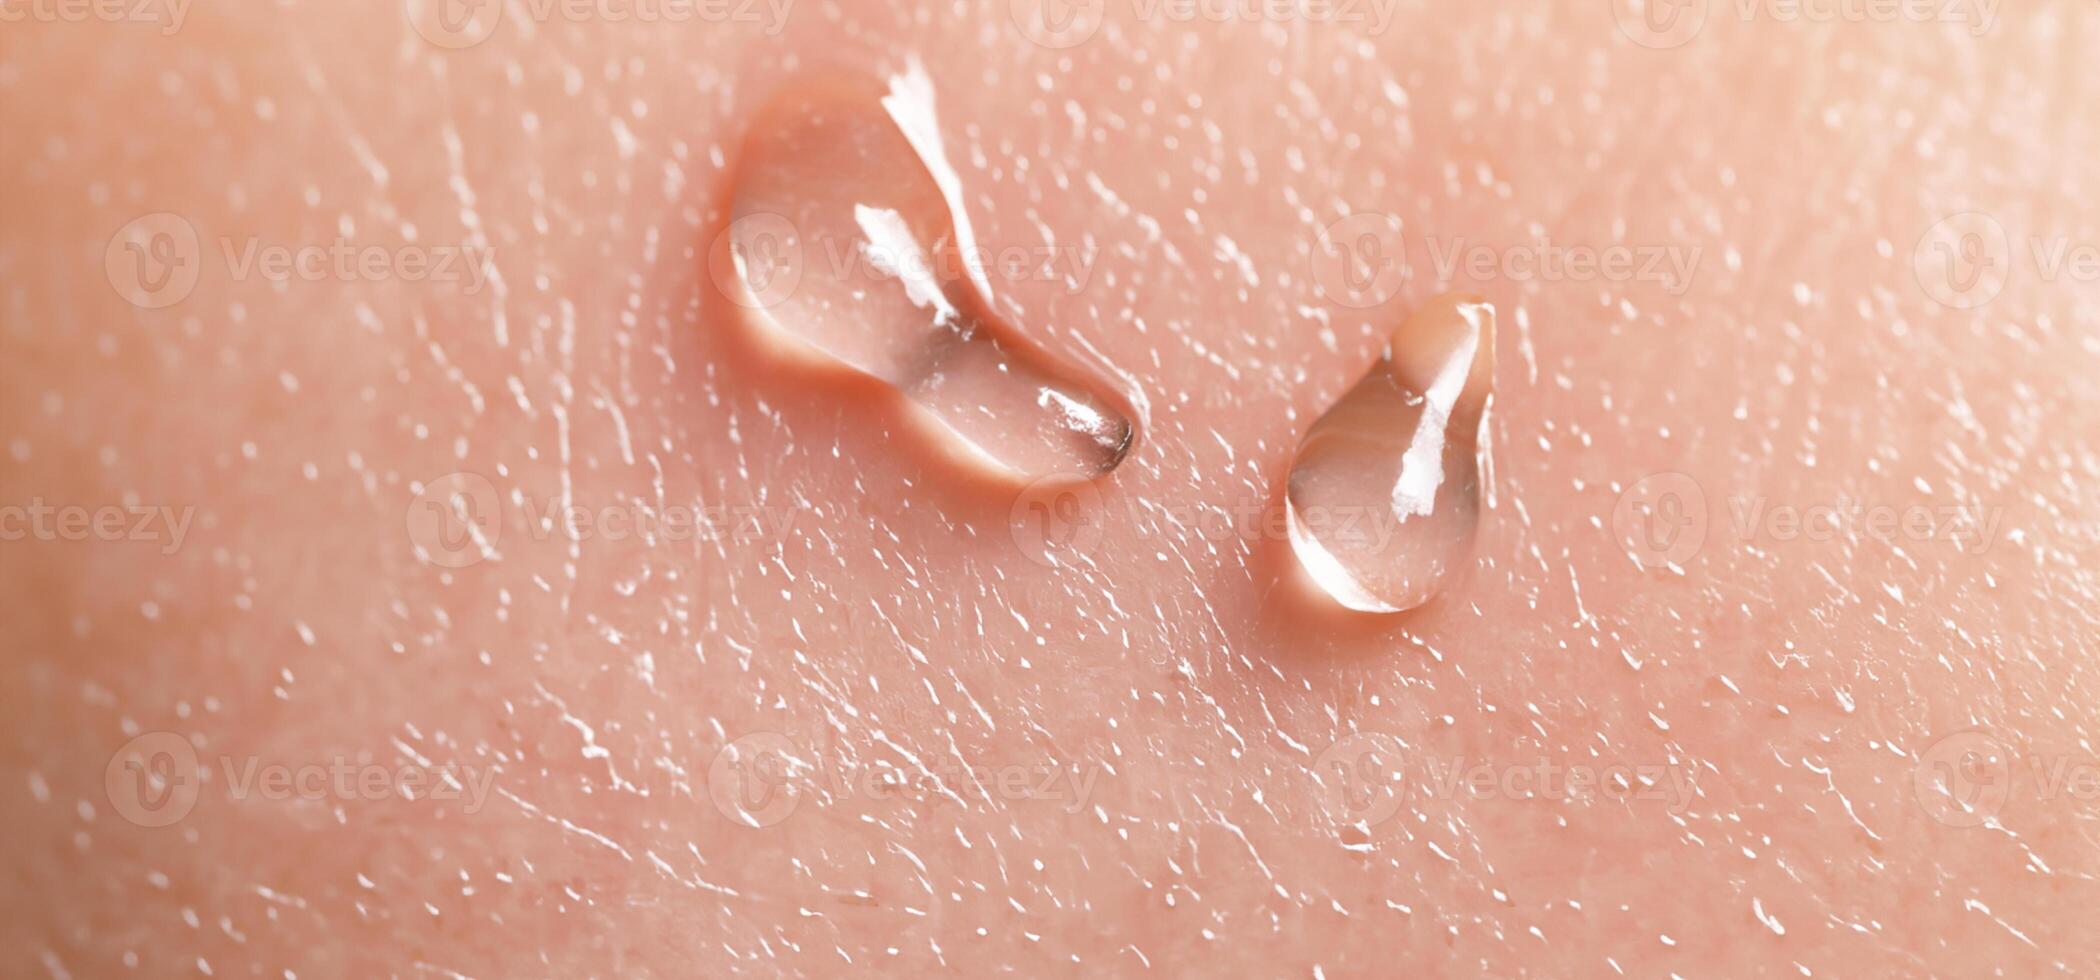 colágeno e hialuron sérum gel em pele. espirrando do hialuron gel. foto